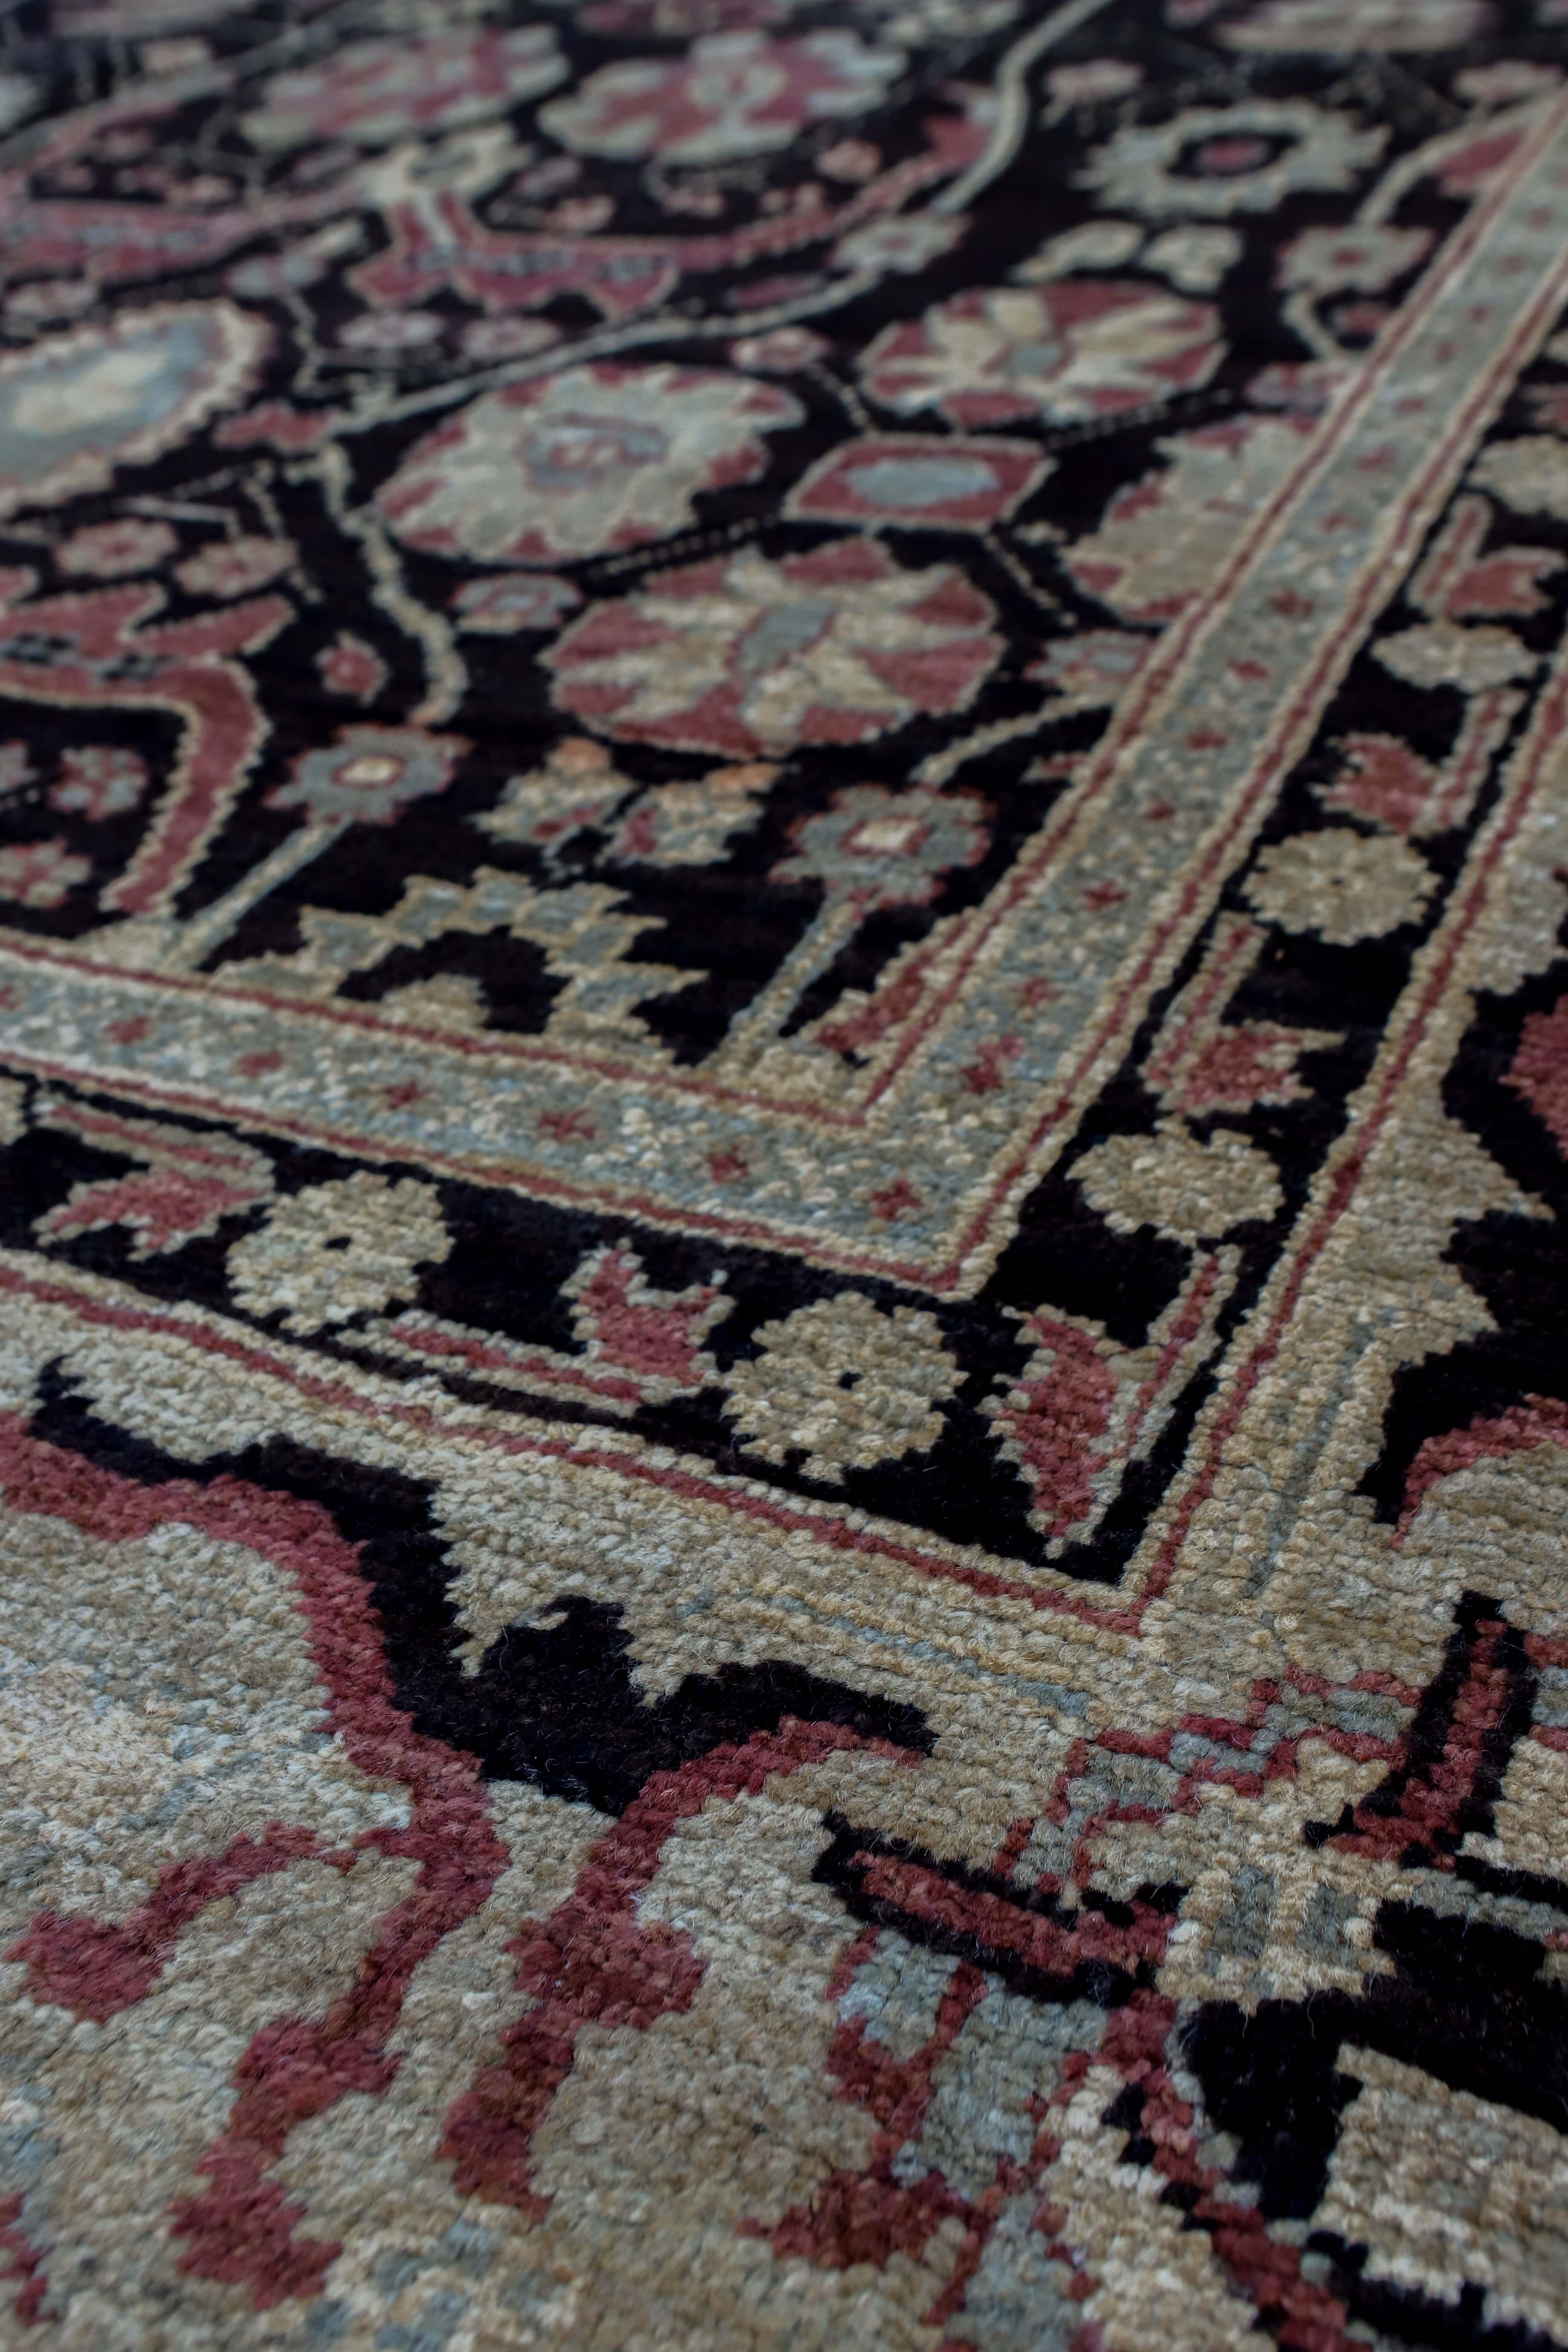 Rot-schwarzer traditioneller afghanischer Teppich im Format 10 x 14.
Handgeknüpft mit handgesponnener Wolle, gewebt in Afghanistan. Dieser wunderschön gestaltete Teppich ist ein Blickfang in jedem Raum. Maße: 10'5' x 13'2